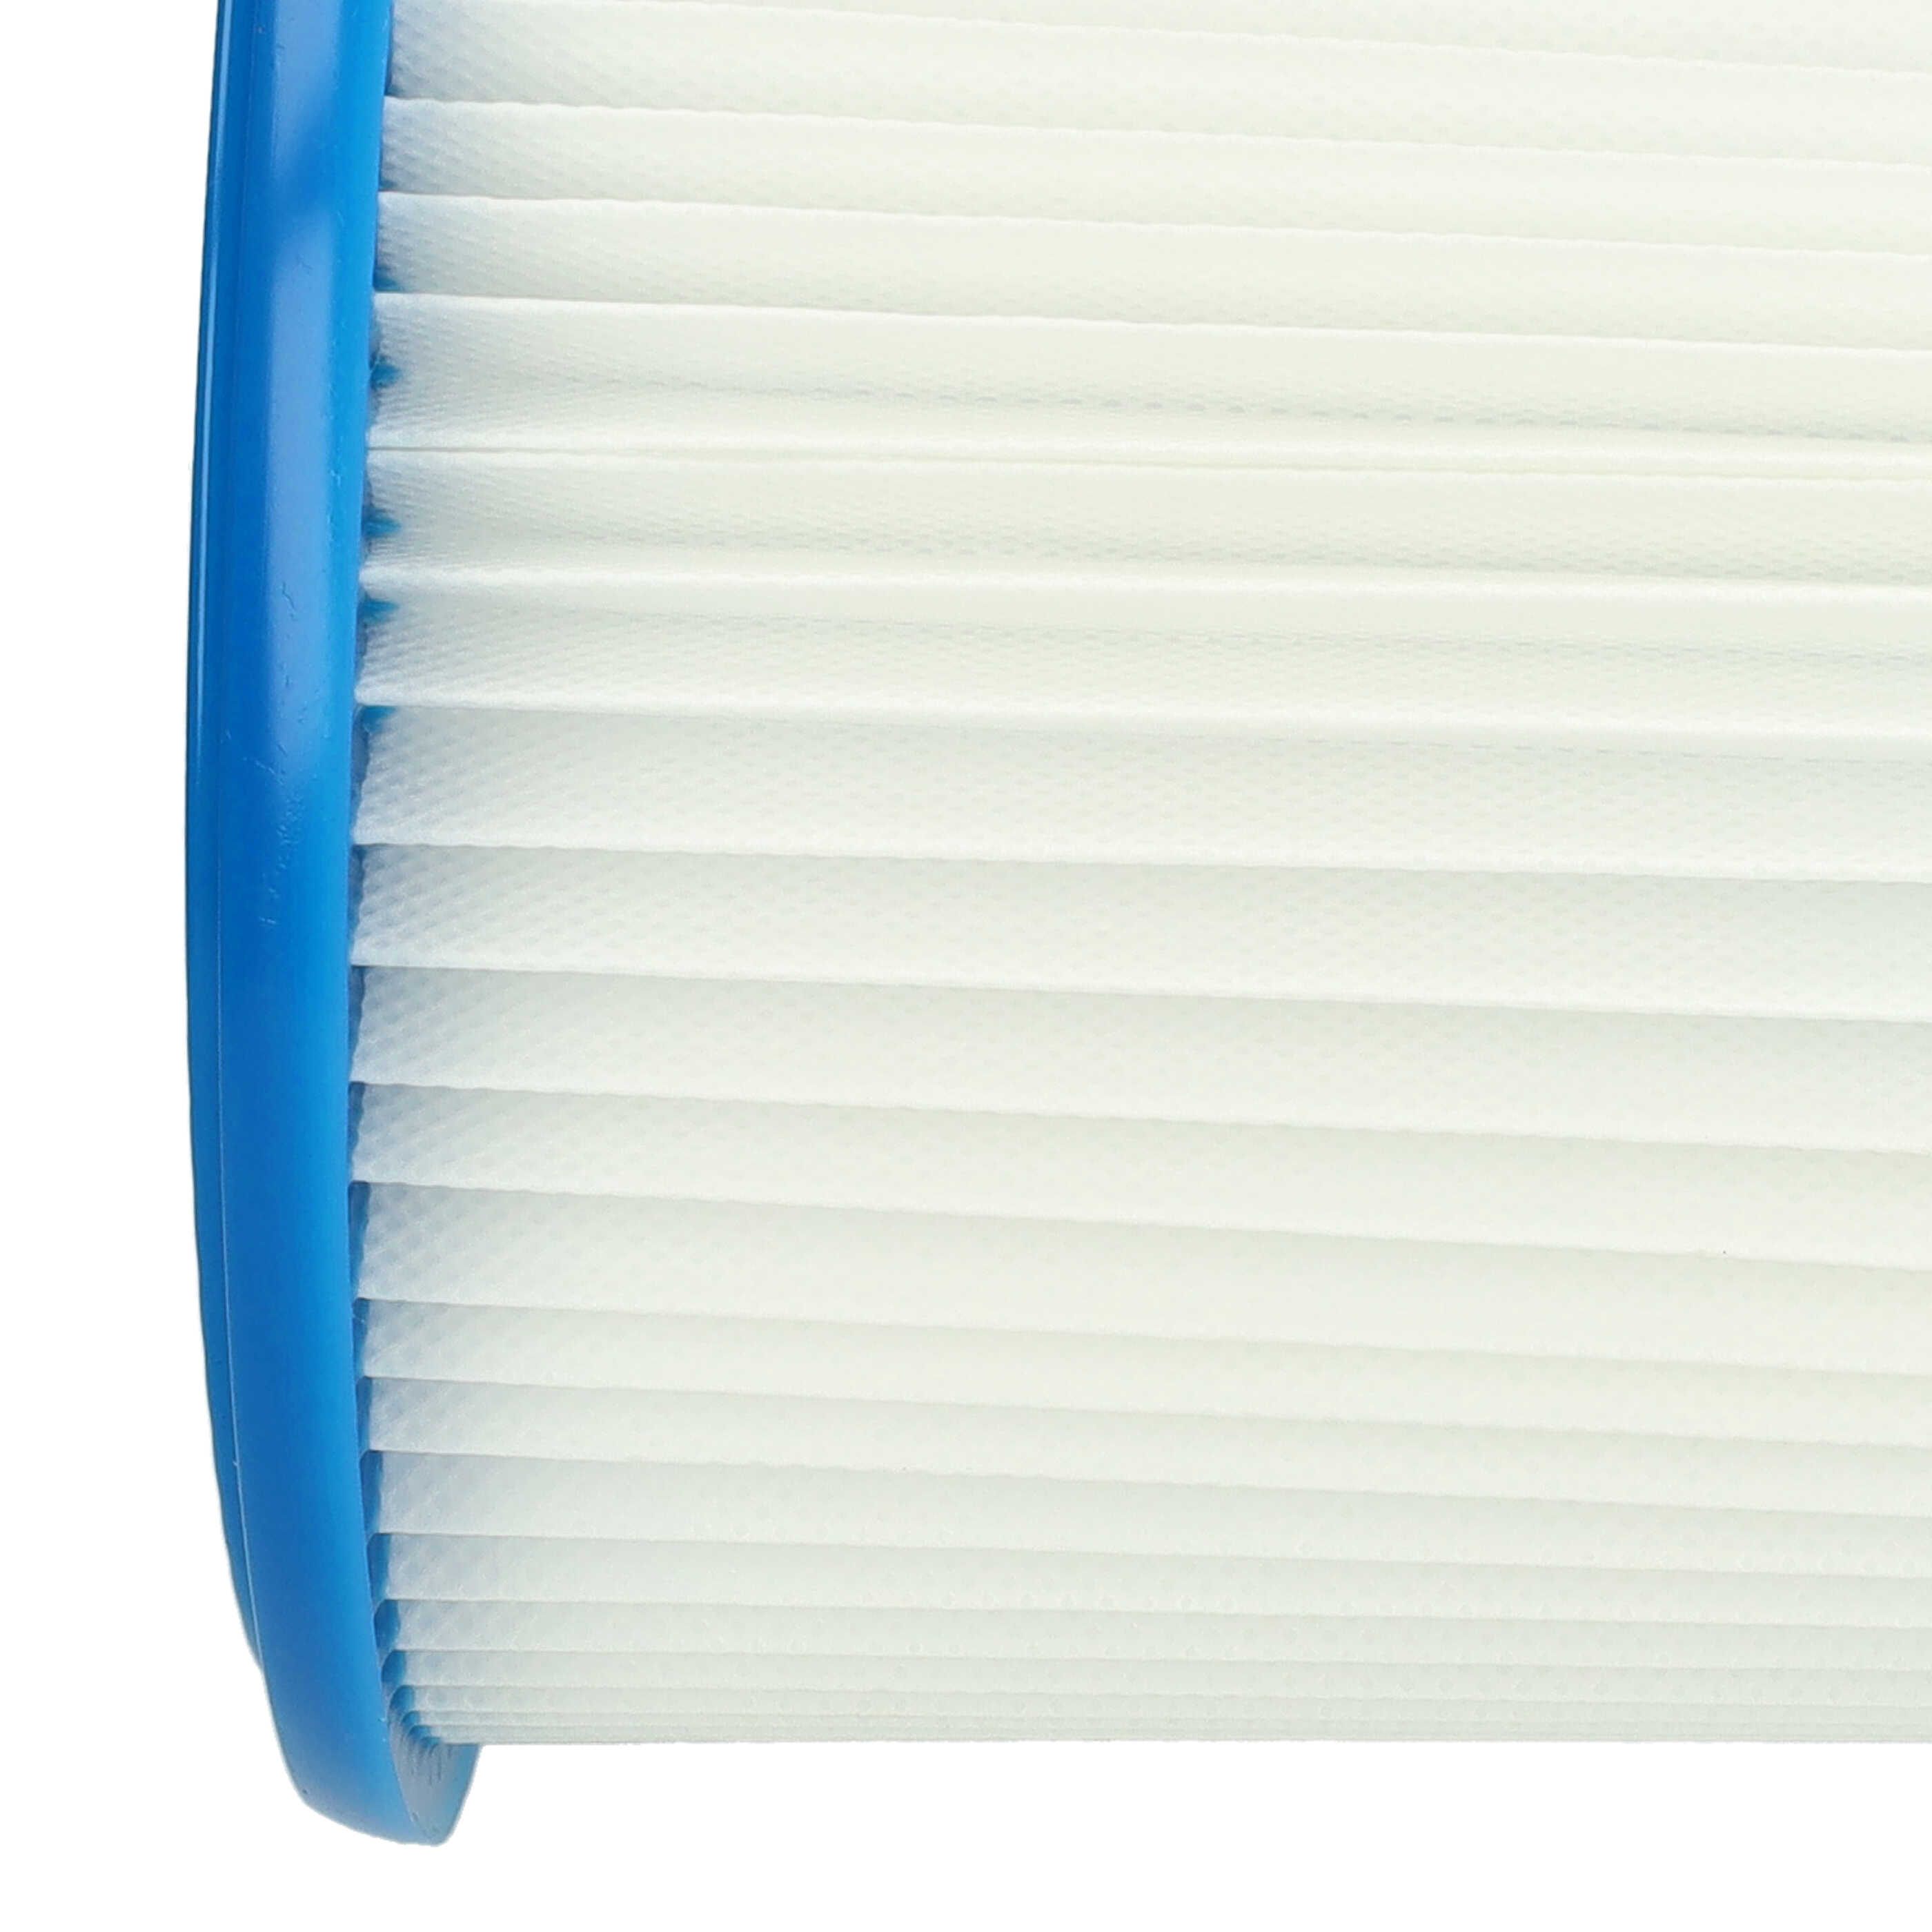 Filtro sostituisce Bosch 2607432024 per aspirapolvere - filtro rotondo, bianco / blu